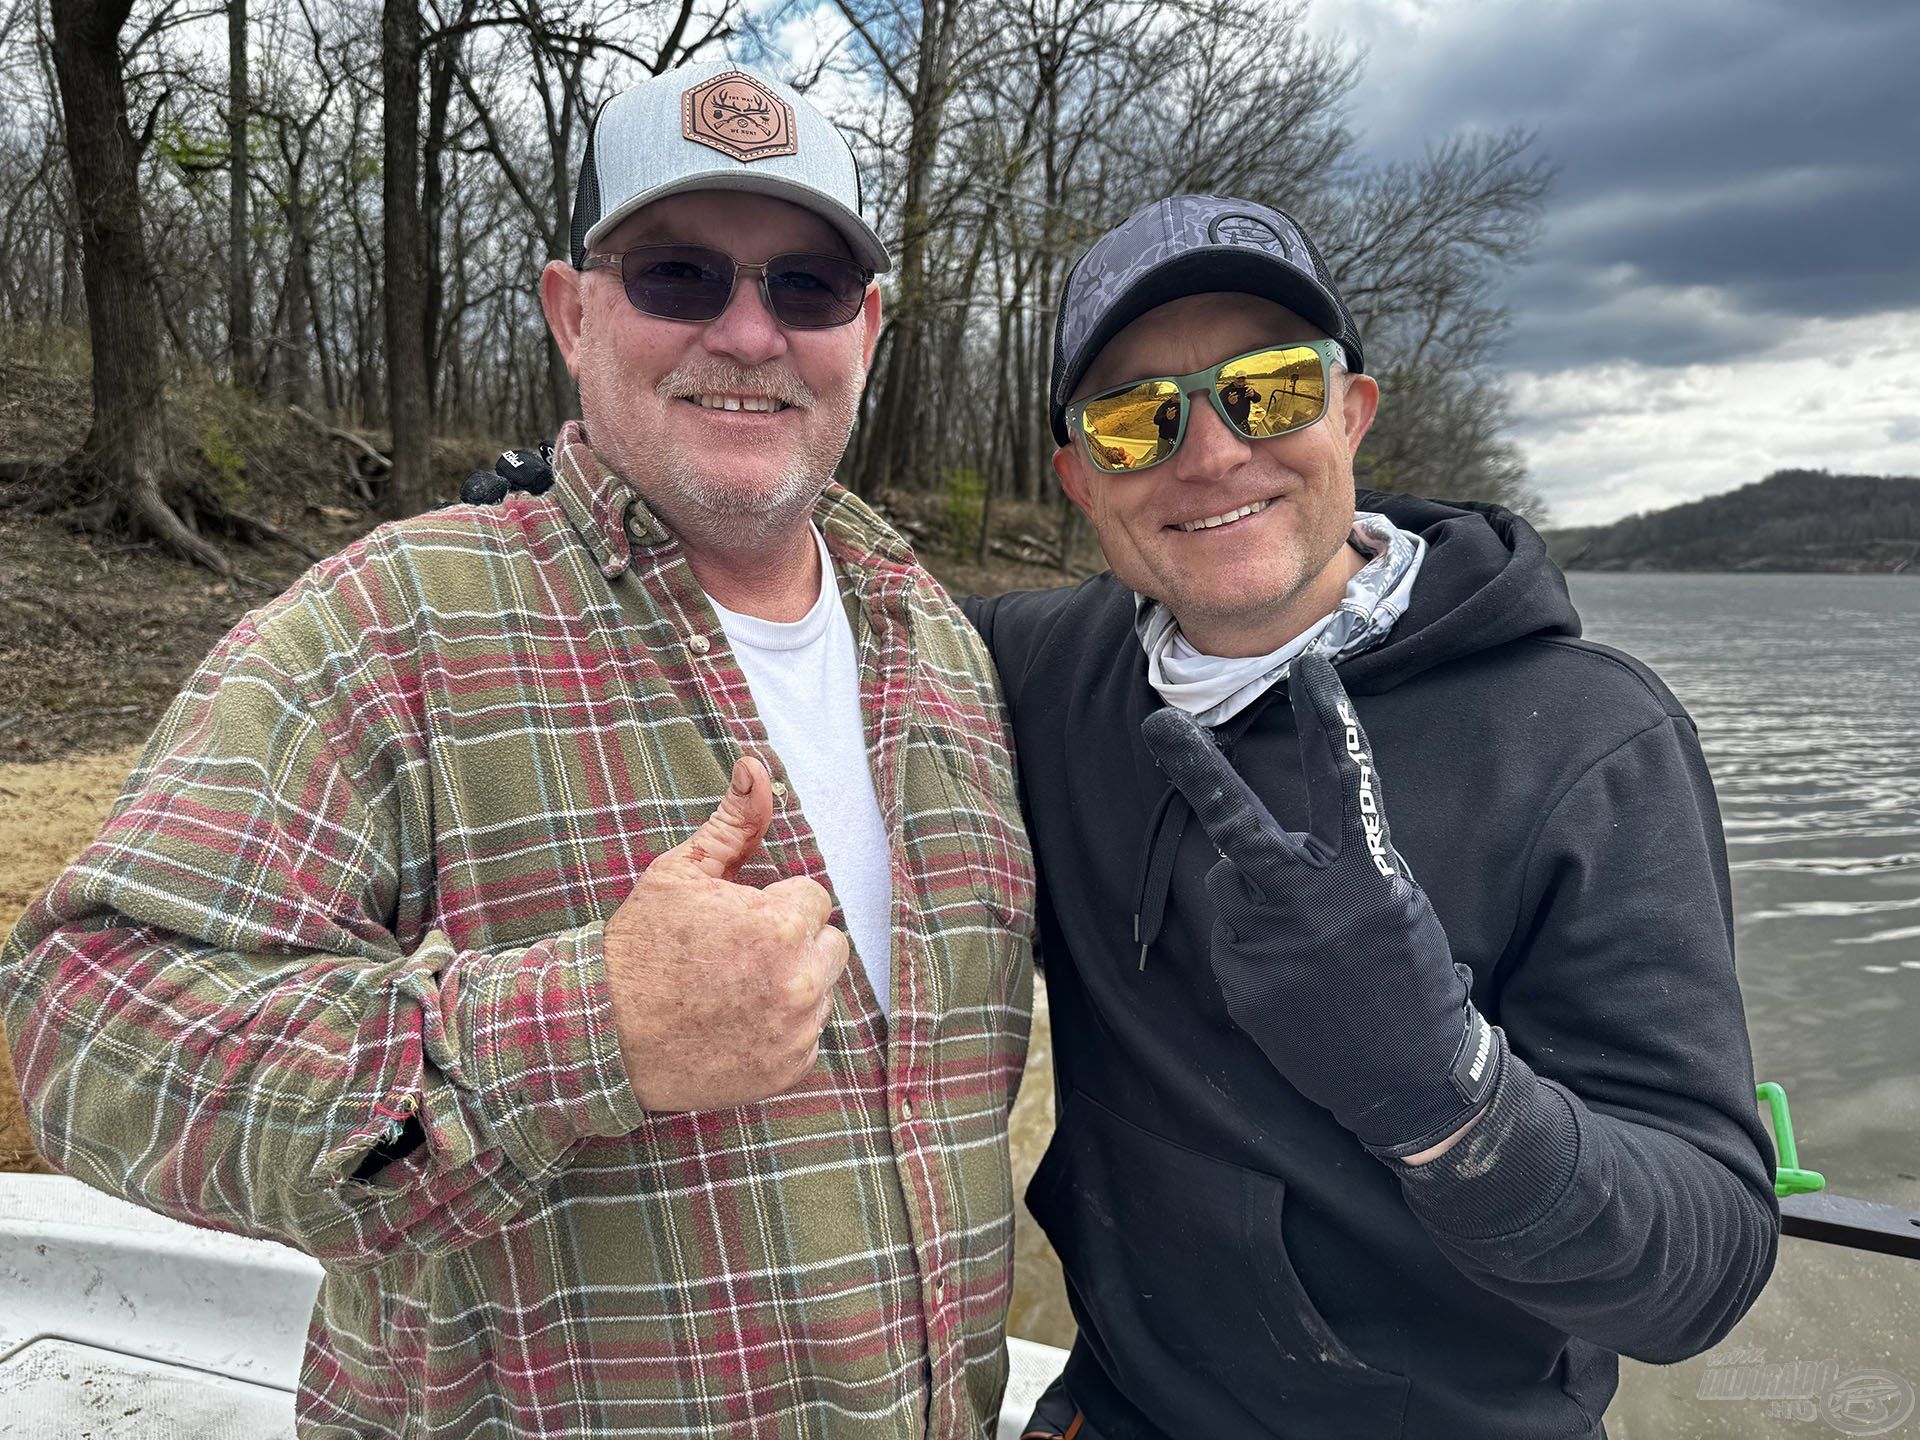 A horgászboltban megismerkedtem Bob Scoggins-szal, aki meghívott egy harcsahorgászatra kedvenc vizére, a Neosho Riverre